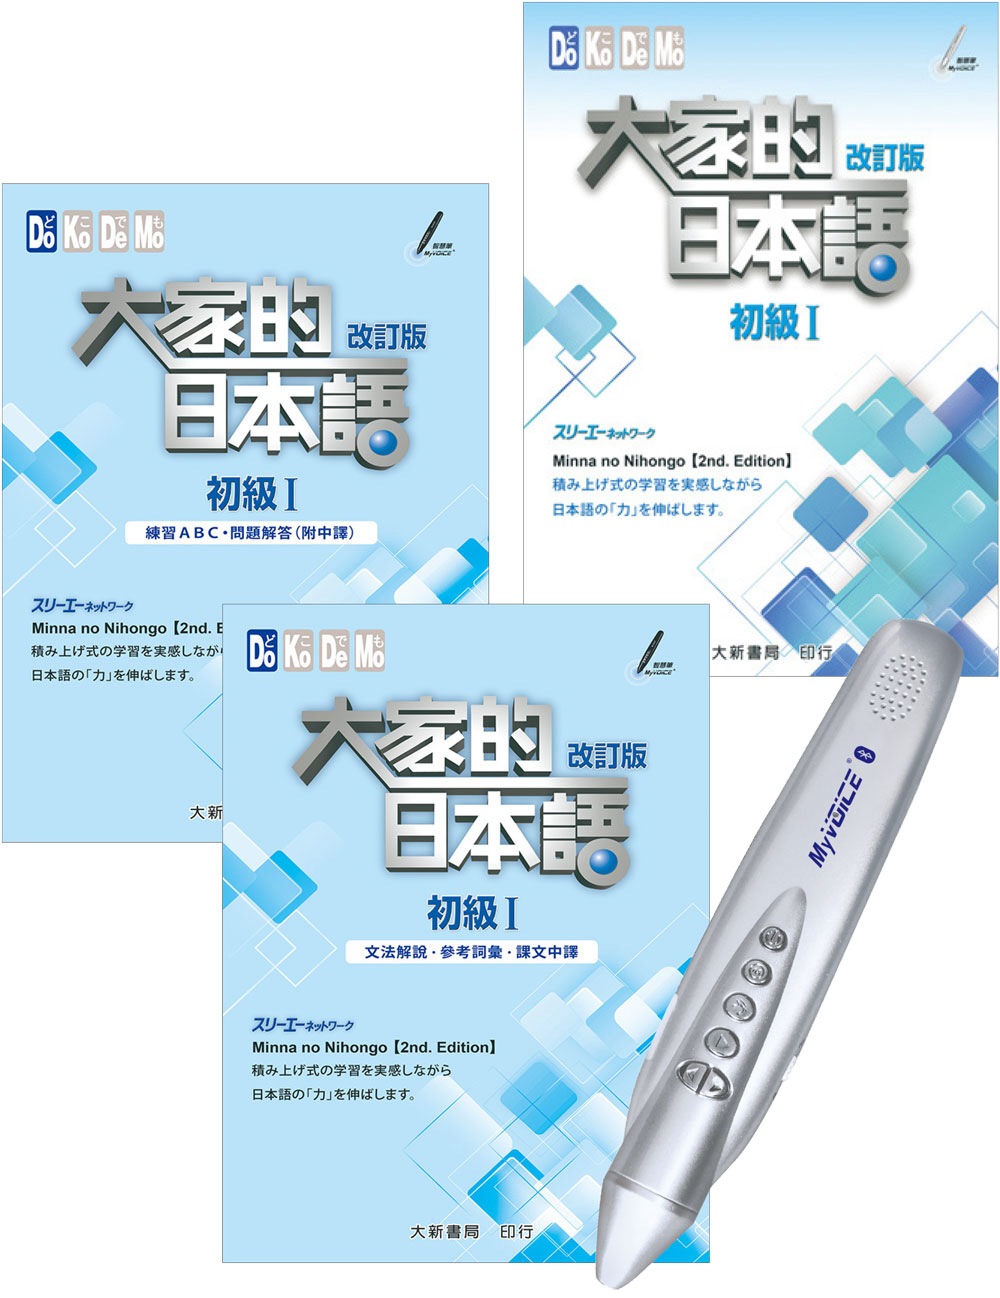 大家的日本語＋My VOICE藍牙數位學習智慧筆(32G)(2版)(限台灣)